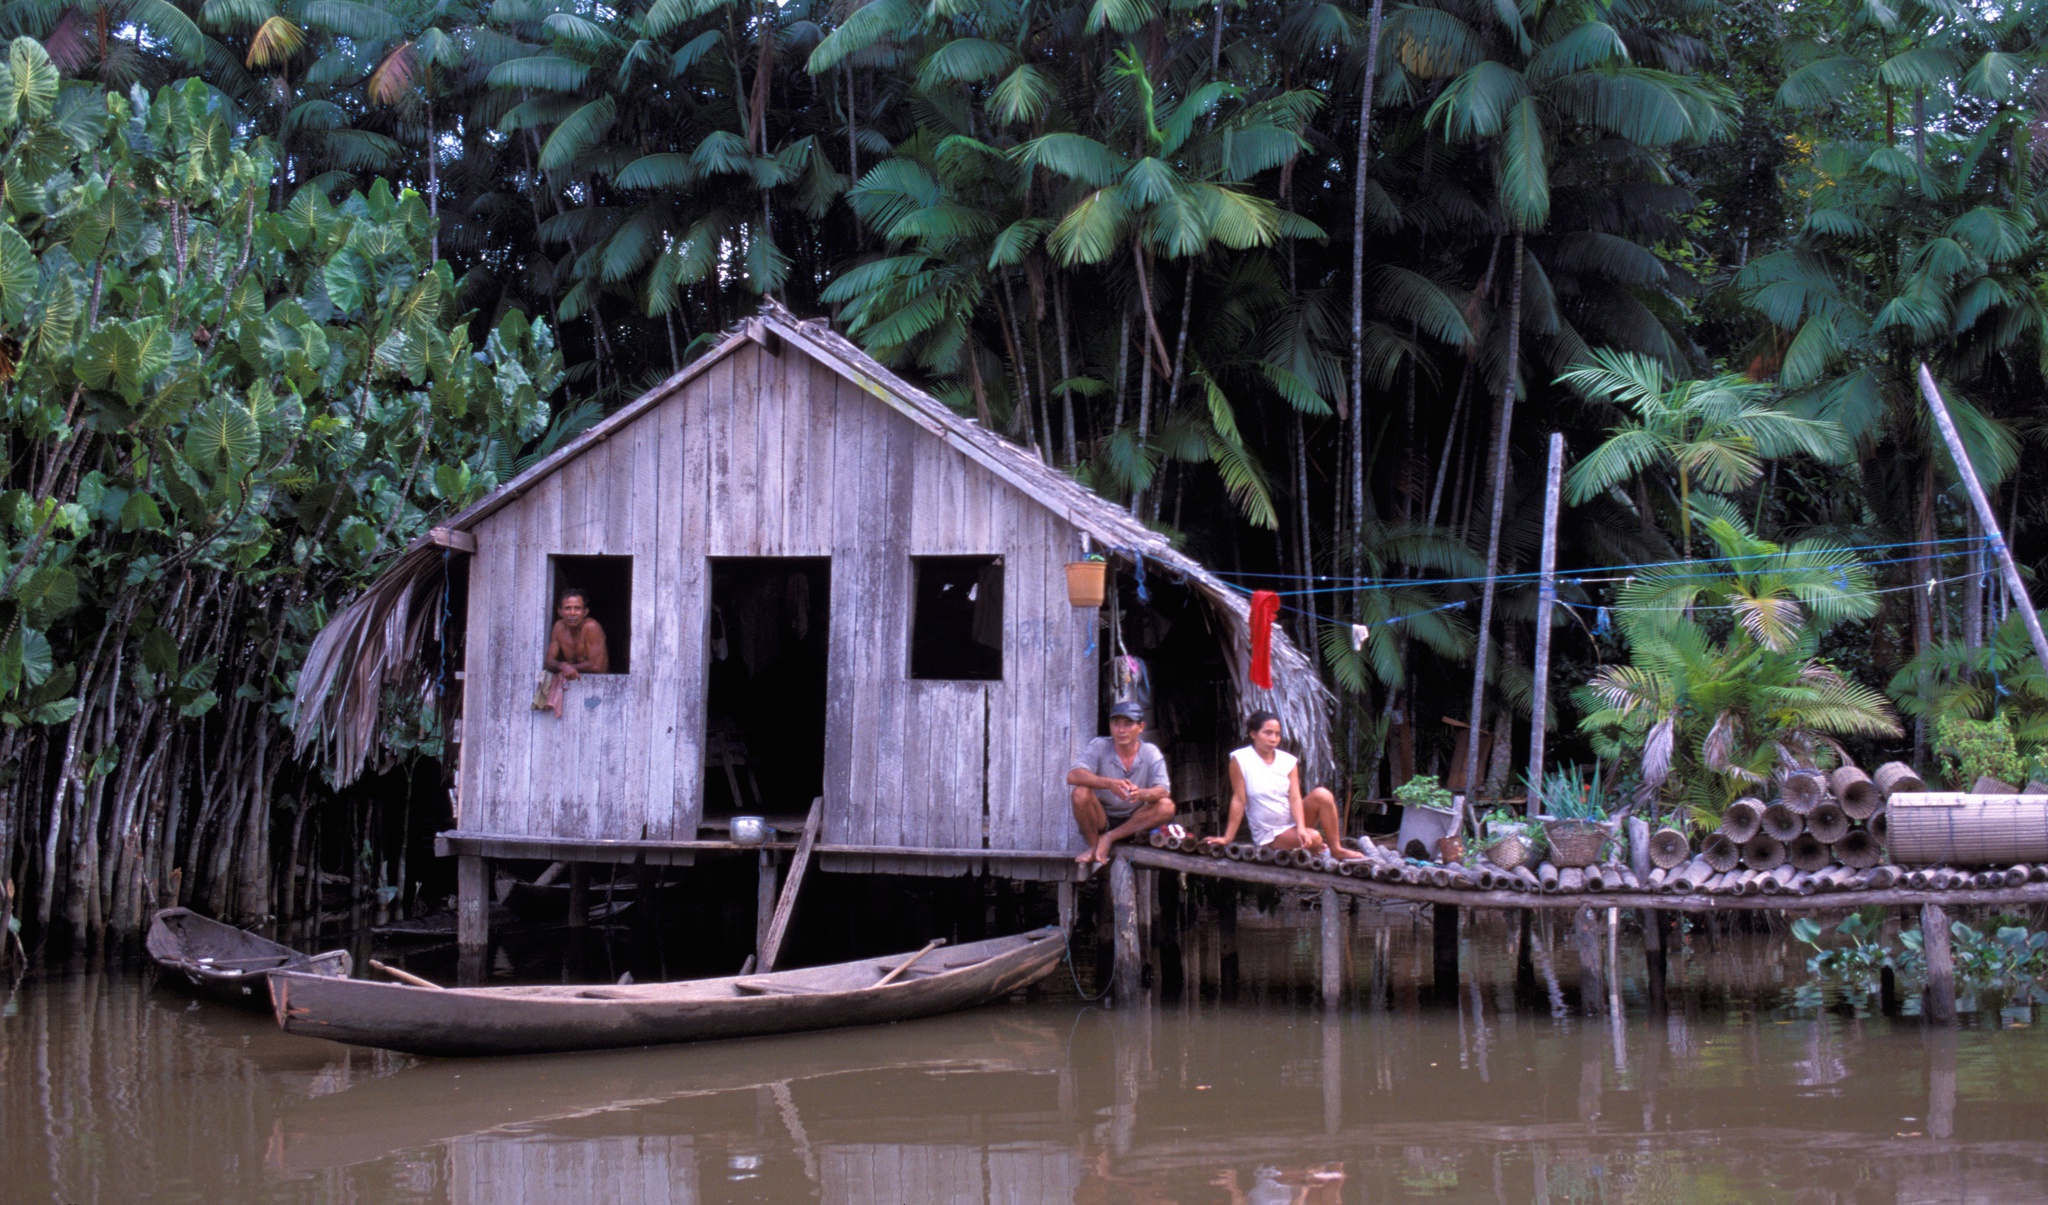 Los pobres amazónicos que sobreviven en la rica selva |  INFORME – SERIE AMAZONICA: LA LUCHA DECISIVA (III)